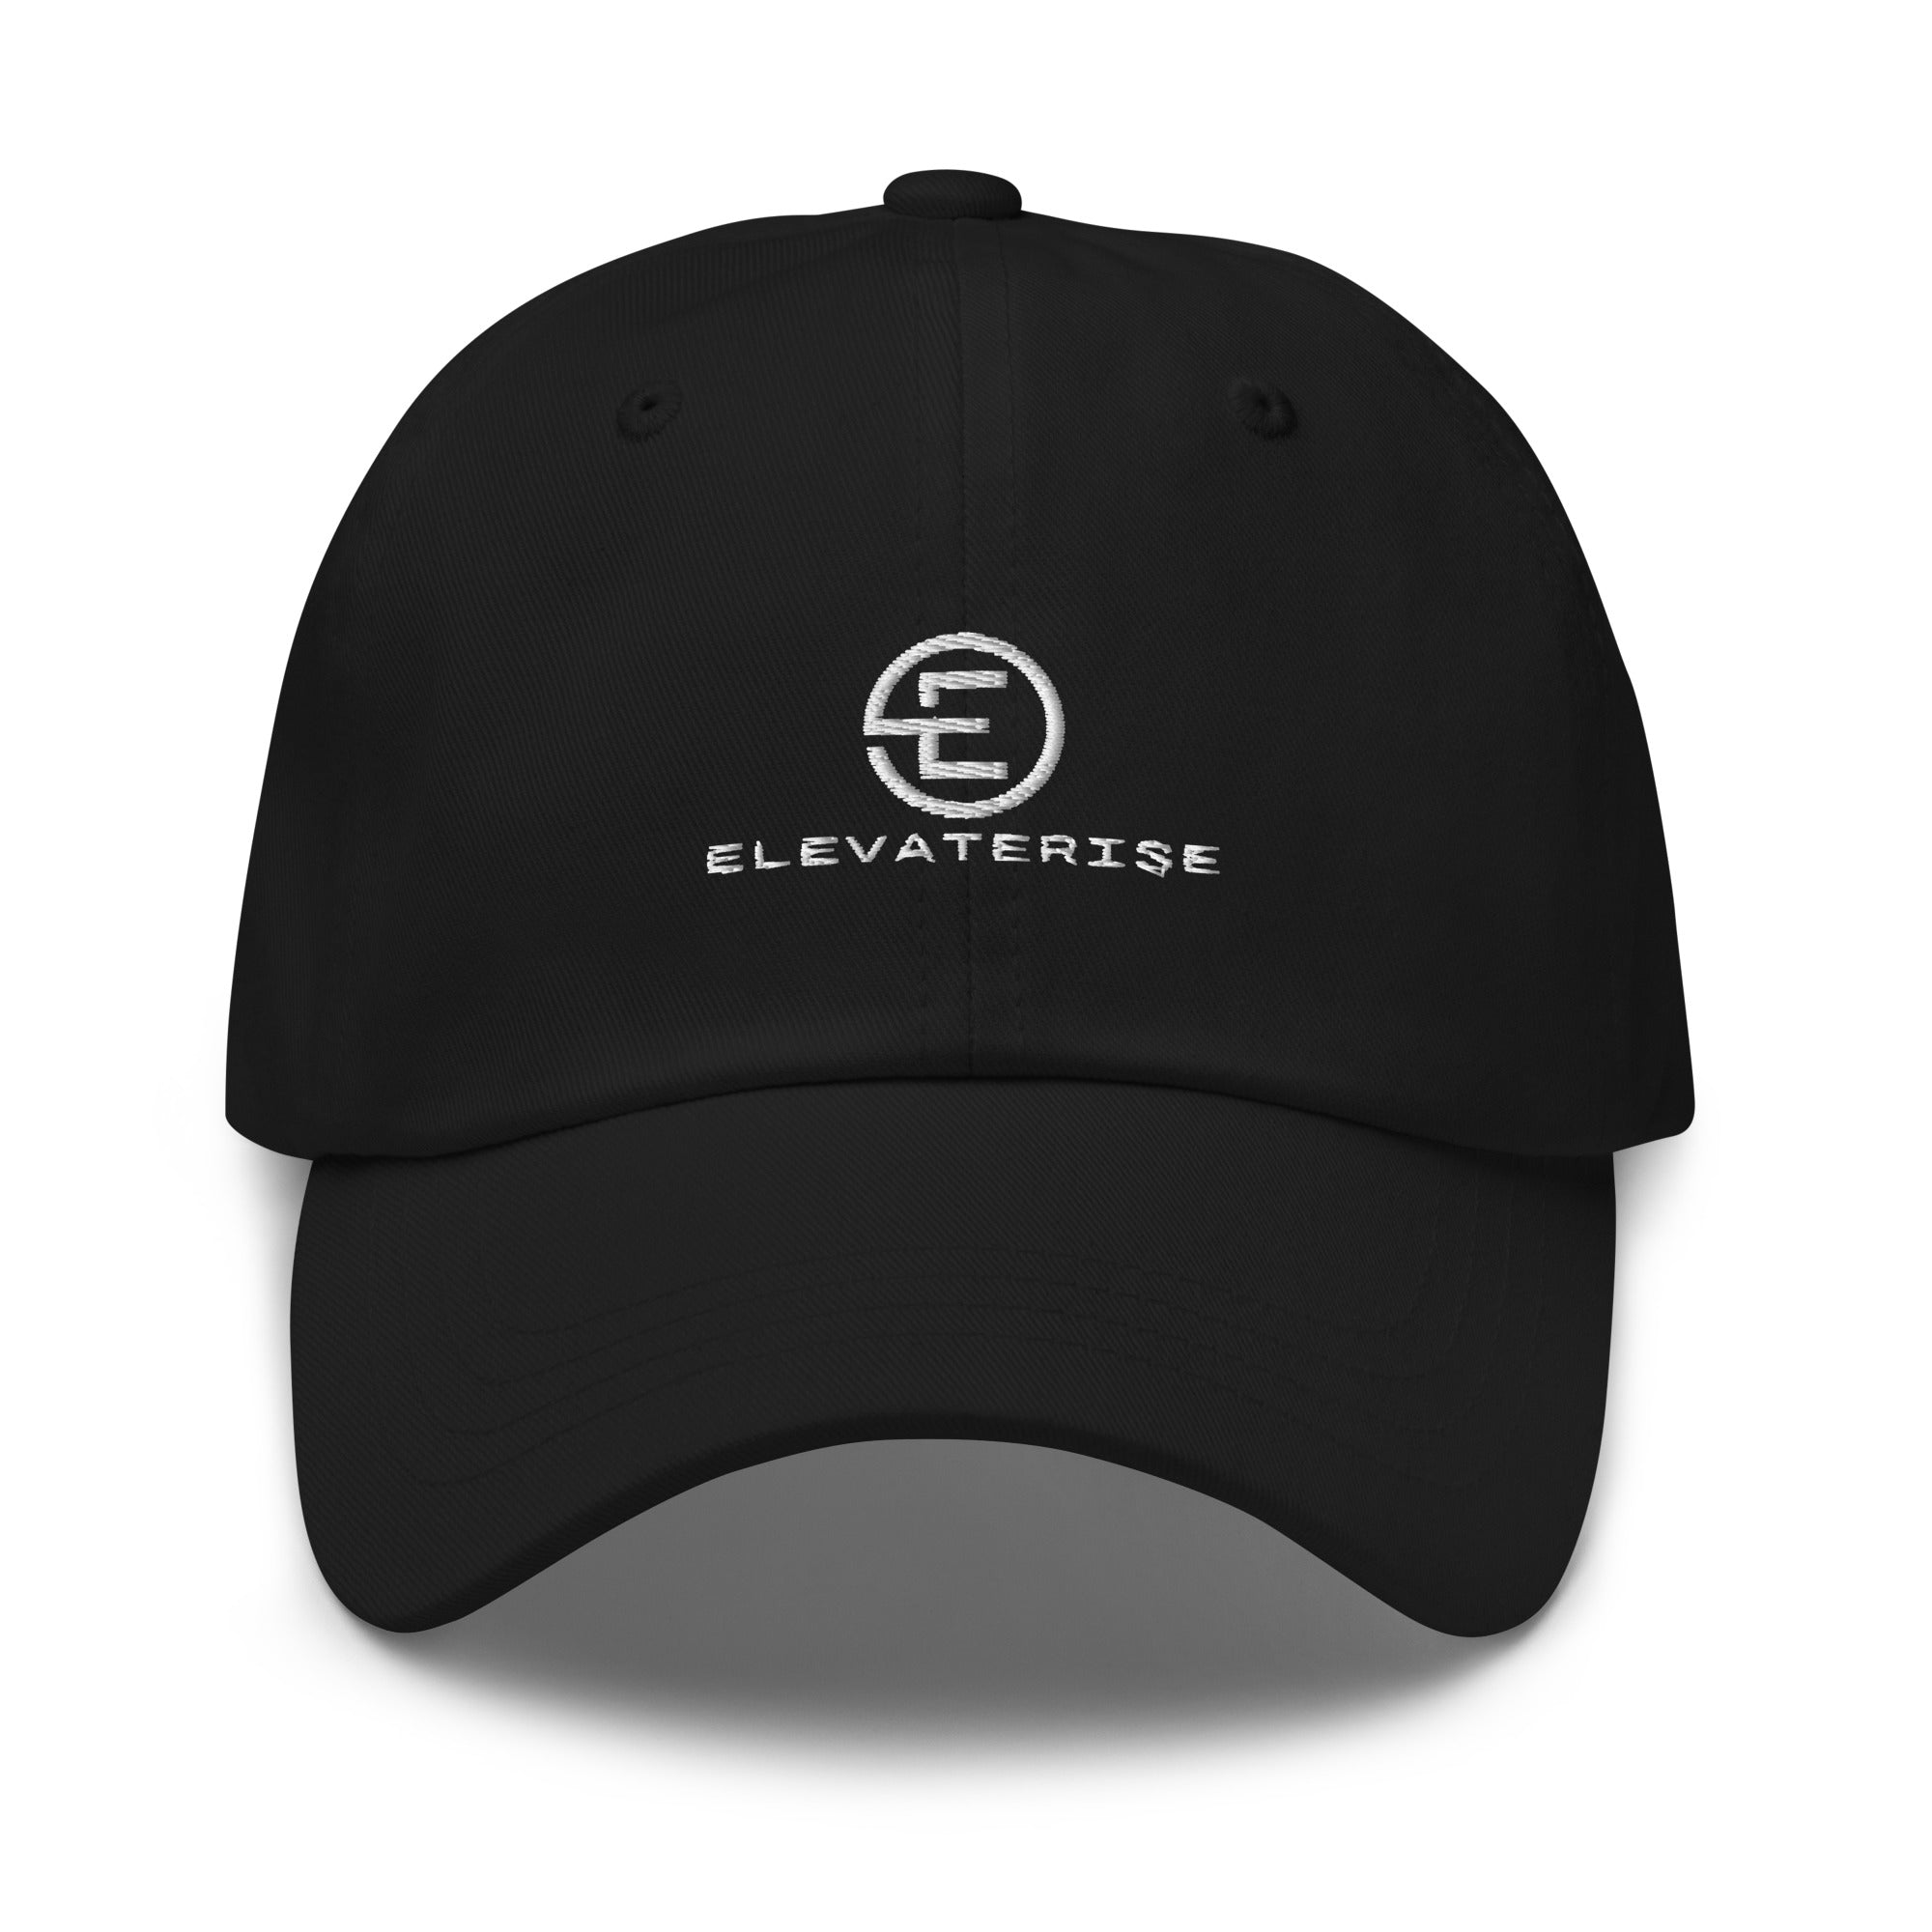 ElevateRise hat